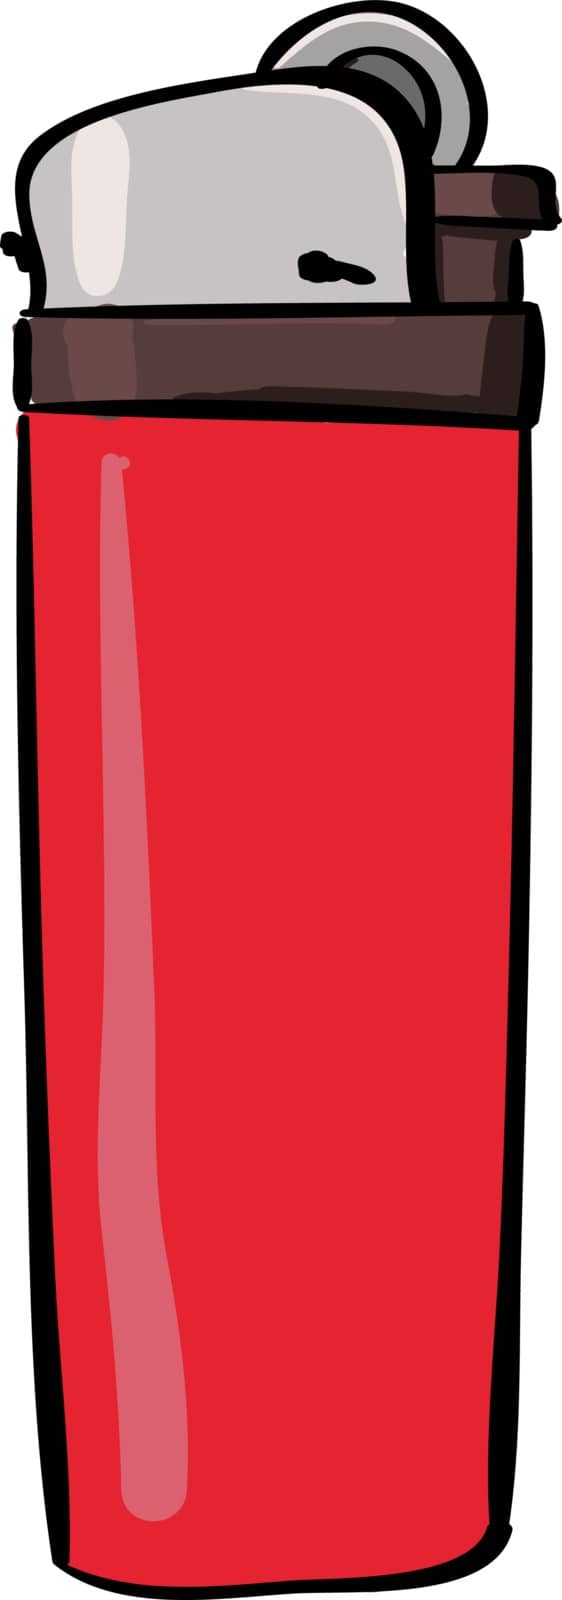 Lighter red, illustration, vector on white background.